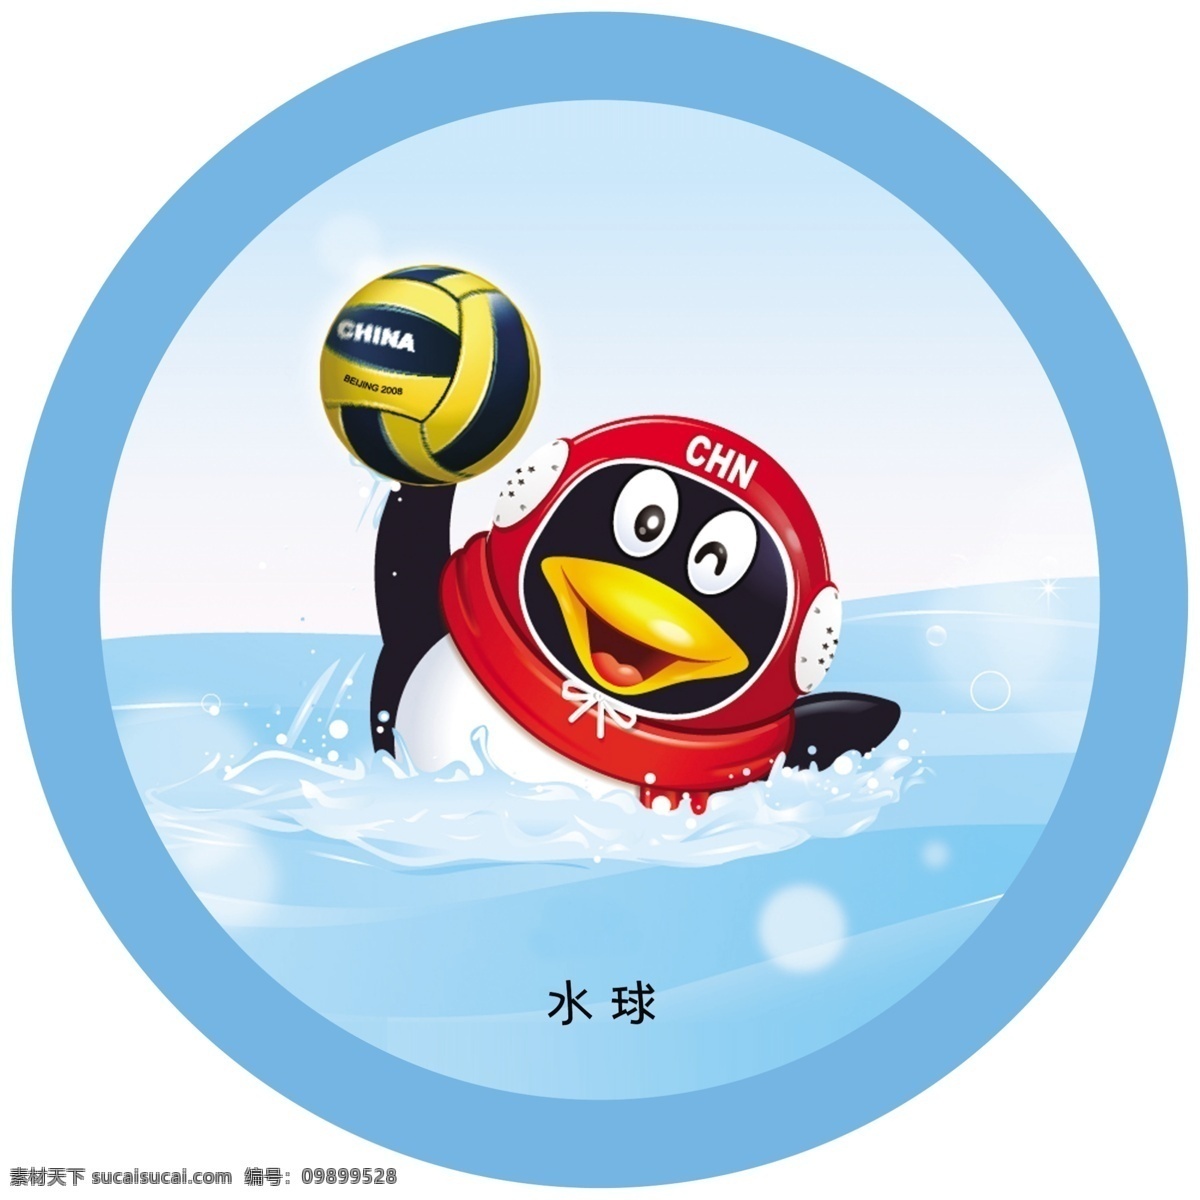 水球标牌 奥运项目 运动项目 水球 打球 球 qq 企鹅 蓝色 圆形 展板模板 广告设计模板 源文件